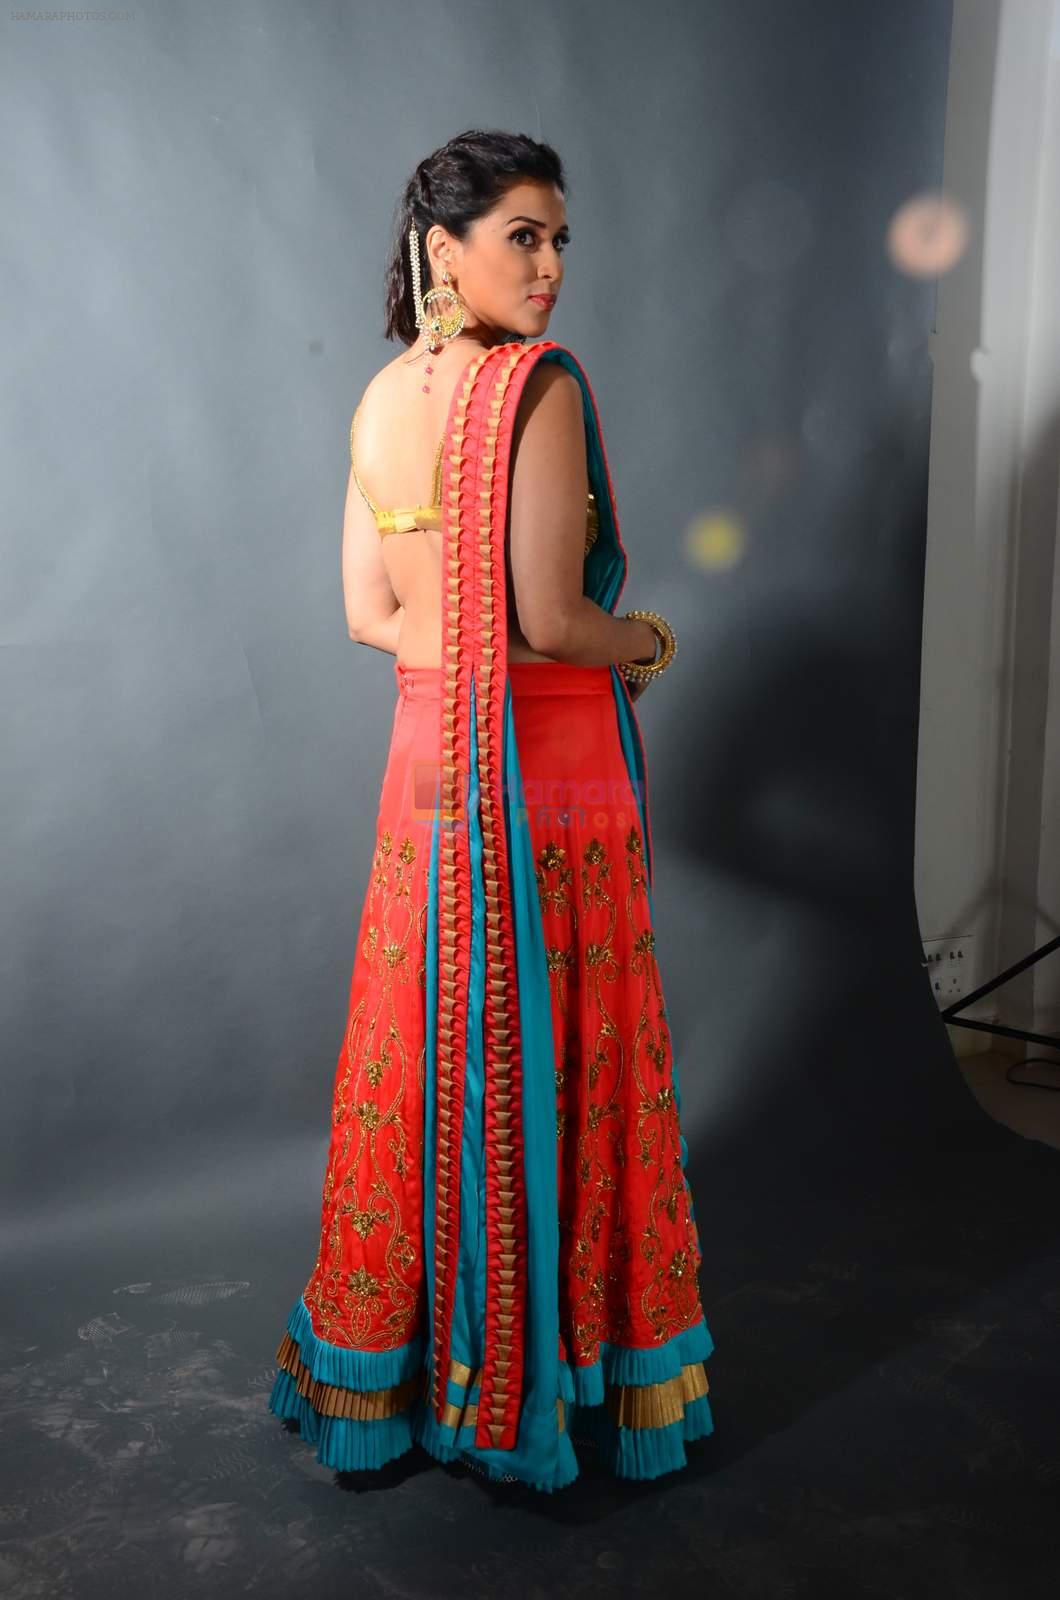 Mannara Chopra photo shoot on 21st Jan 2016